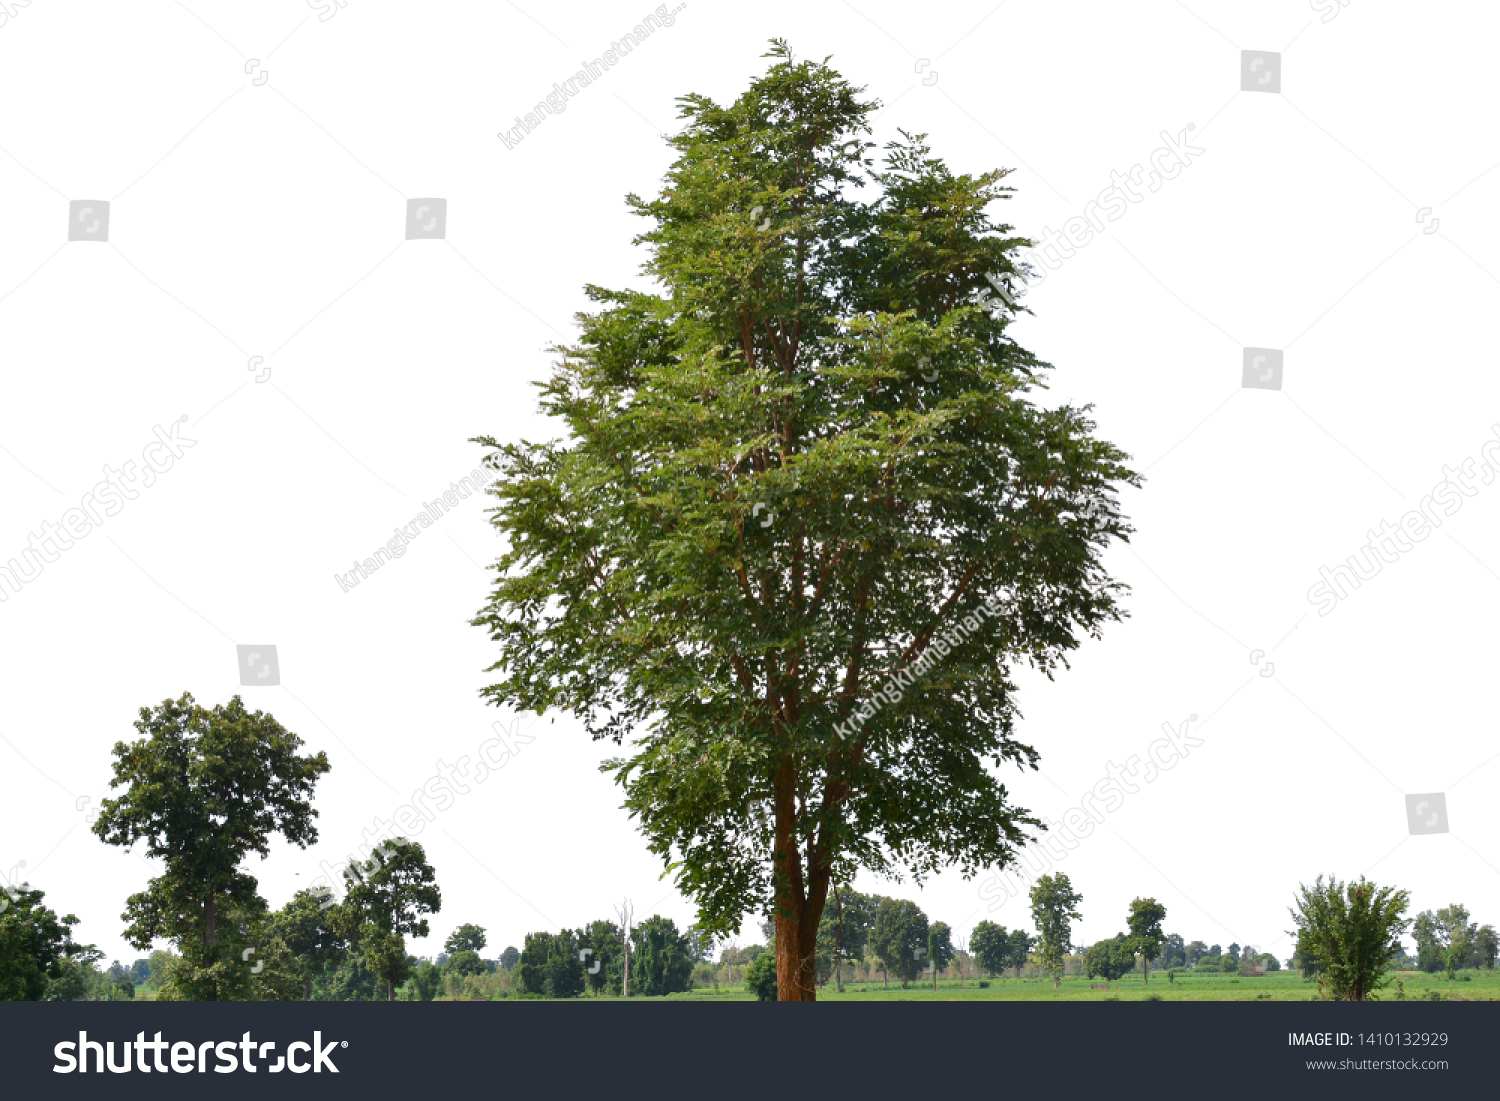 Isolated tree on white background #1410132929